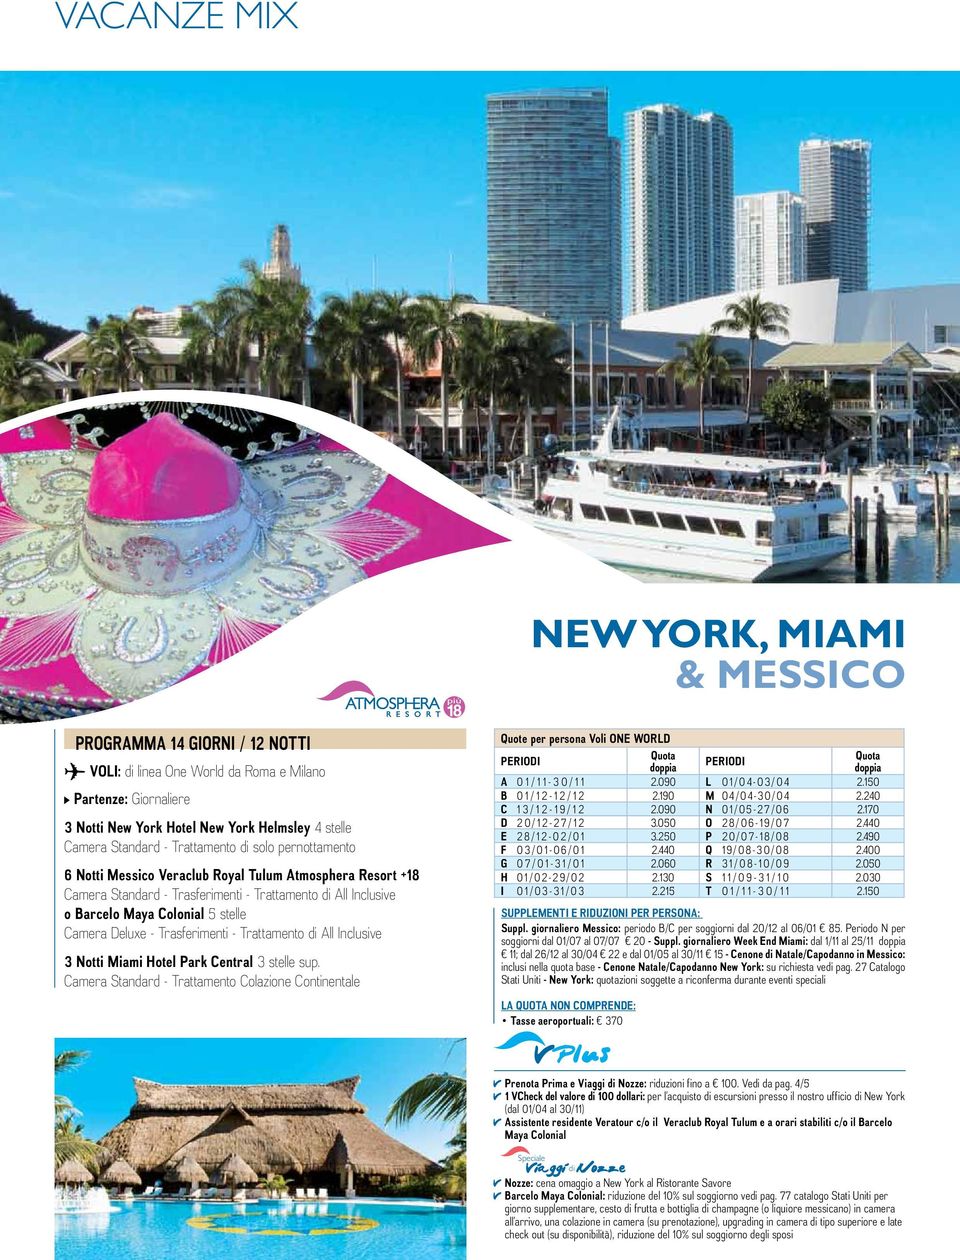 - Trattamento di All Inclusive 3 Notti Miami Hotel Park Central 3 stelle sup. Camera Standard - Trattamento Colazione Continentale A 0 1 / 1 1-3 0 / 1 1 2.090 L 01/04-03/04 2.